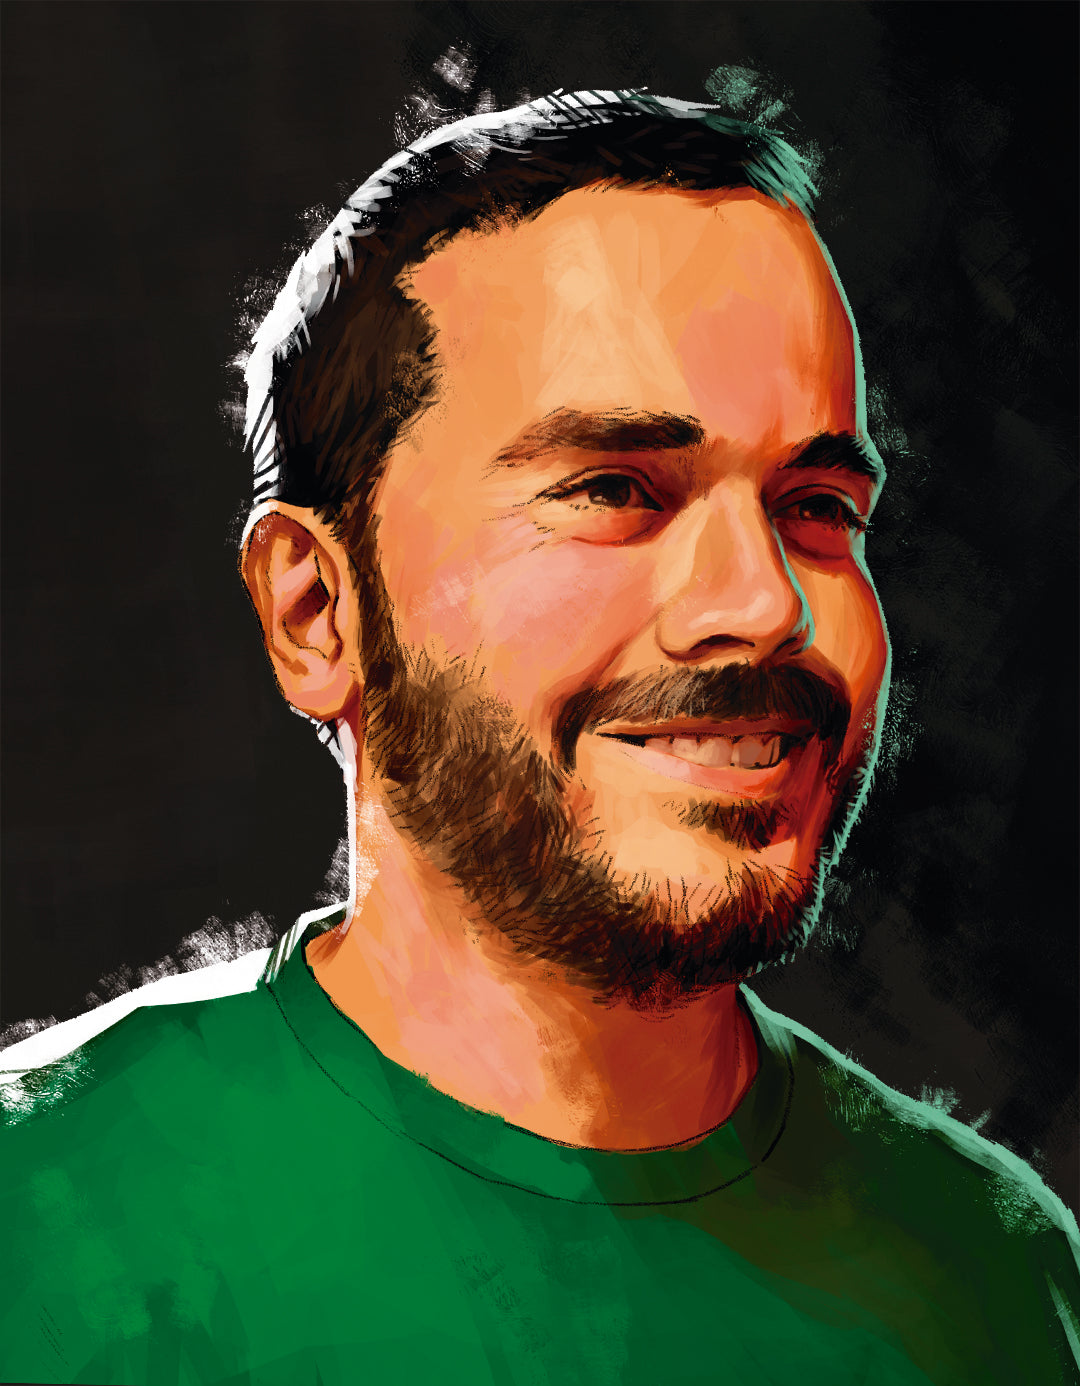 Illustrated portrait of Kirk Dennison